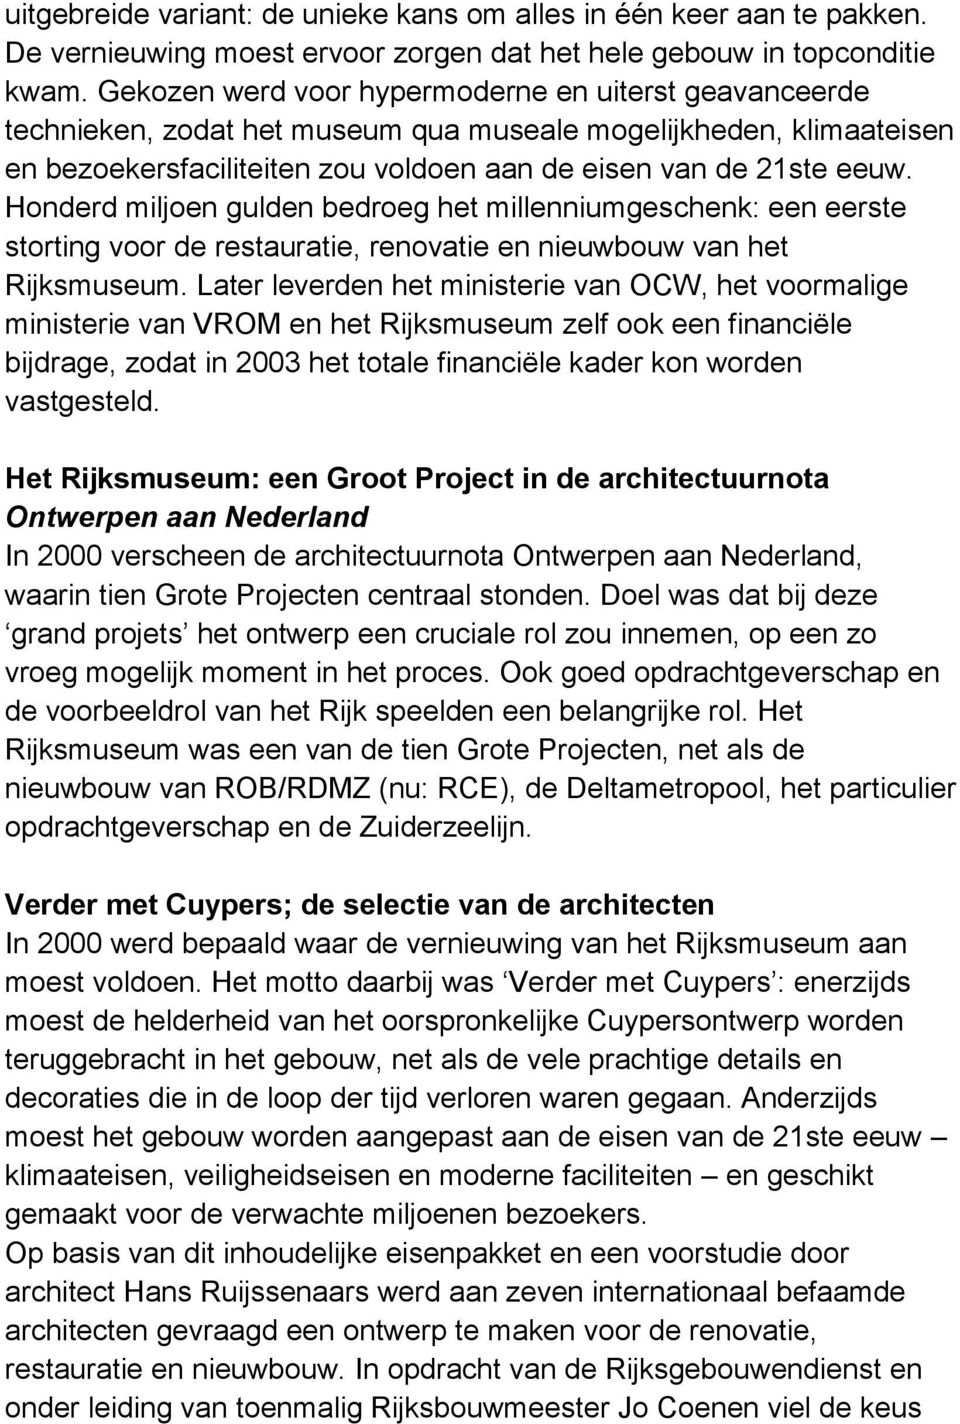 Honderd miljoen gulden bedroeg het millenniumgeschenk: een eerste storting voor de restauratie, renovatie en nieuwbouw van het Rijksmuseum.